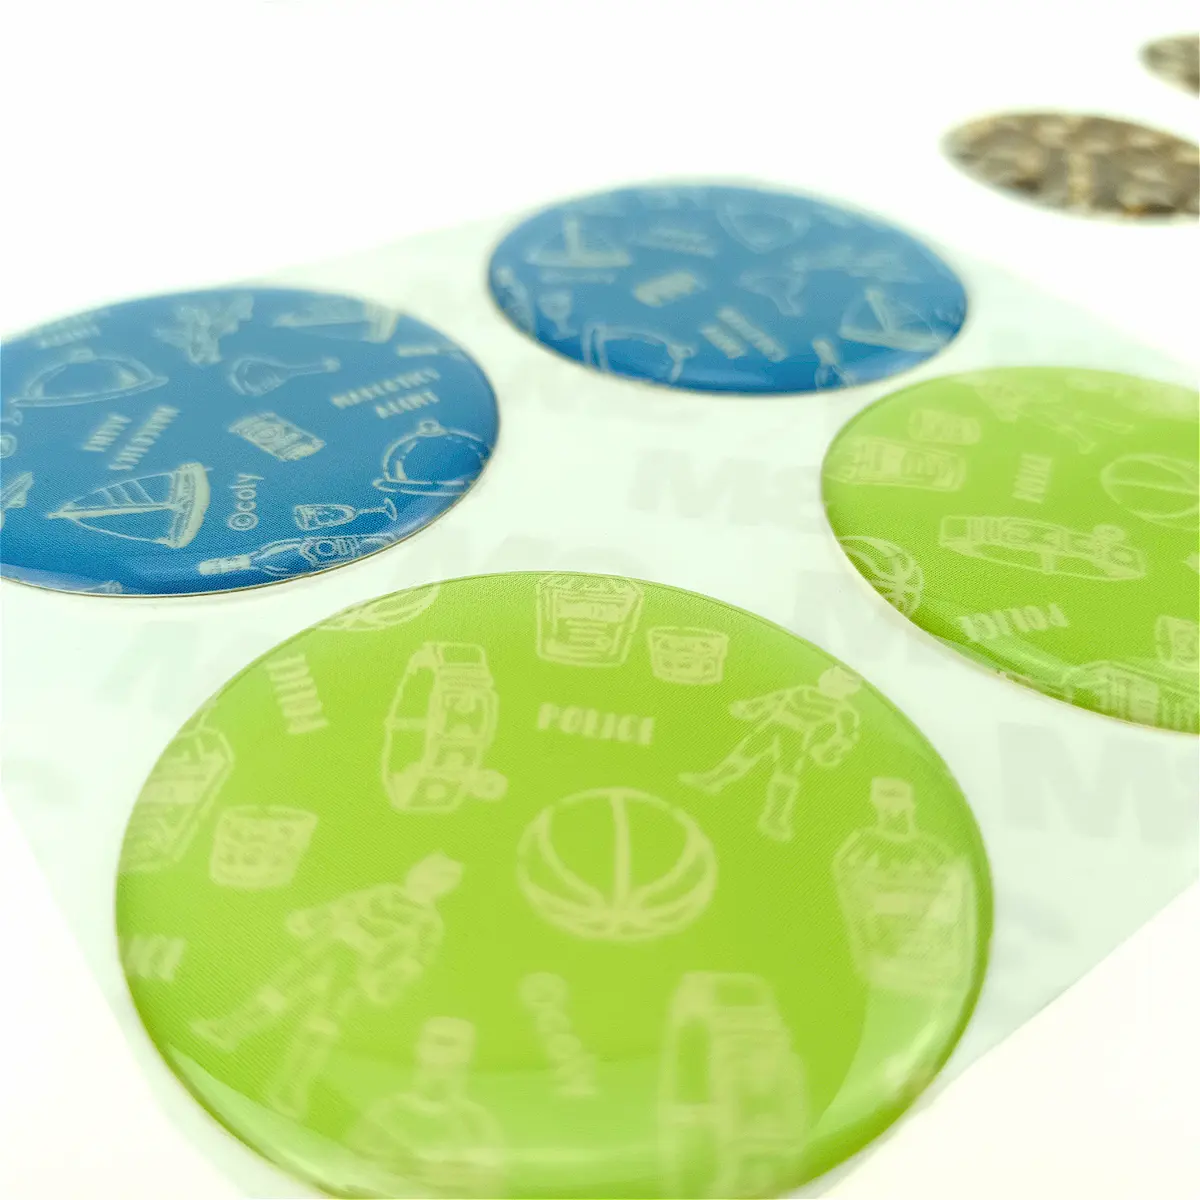 Etiqueta de cúpula de resina personalizada OEM/ODM, etiquetas de embalaje privado coloridas de PVC transparente, logotipo de Gel de marca registrada epoxi, pegatina de resina epoxi